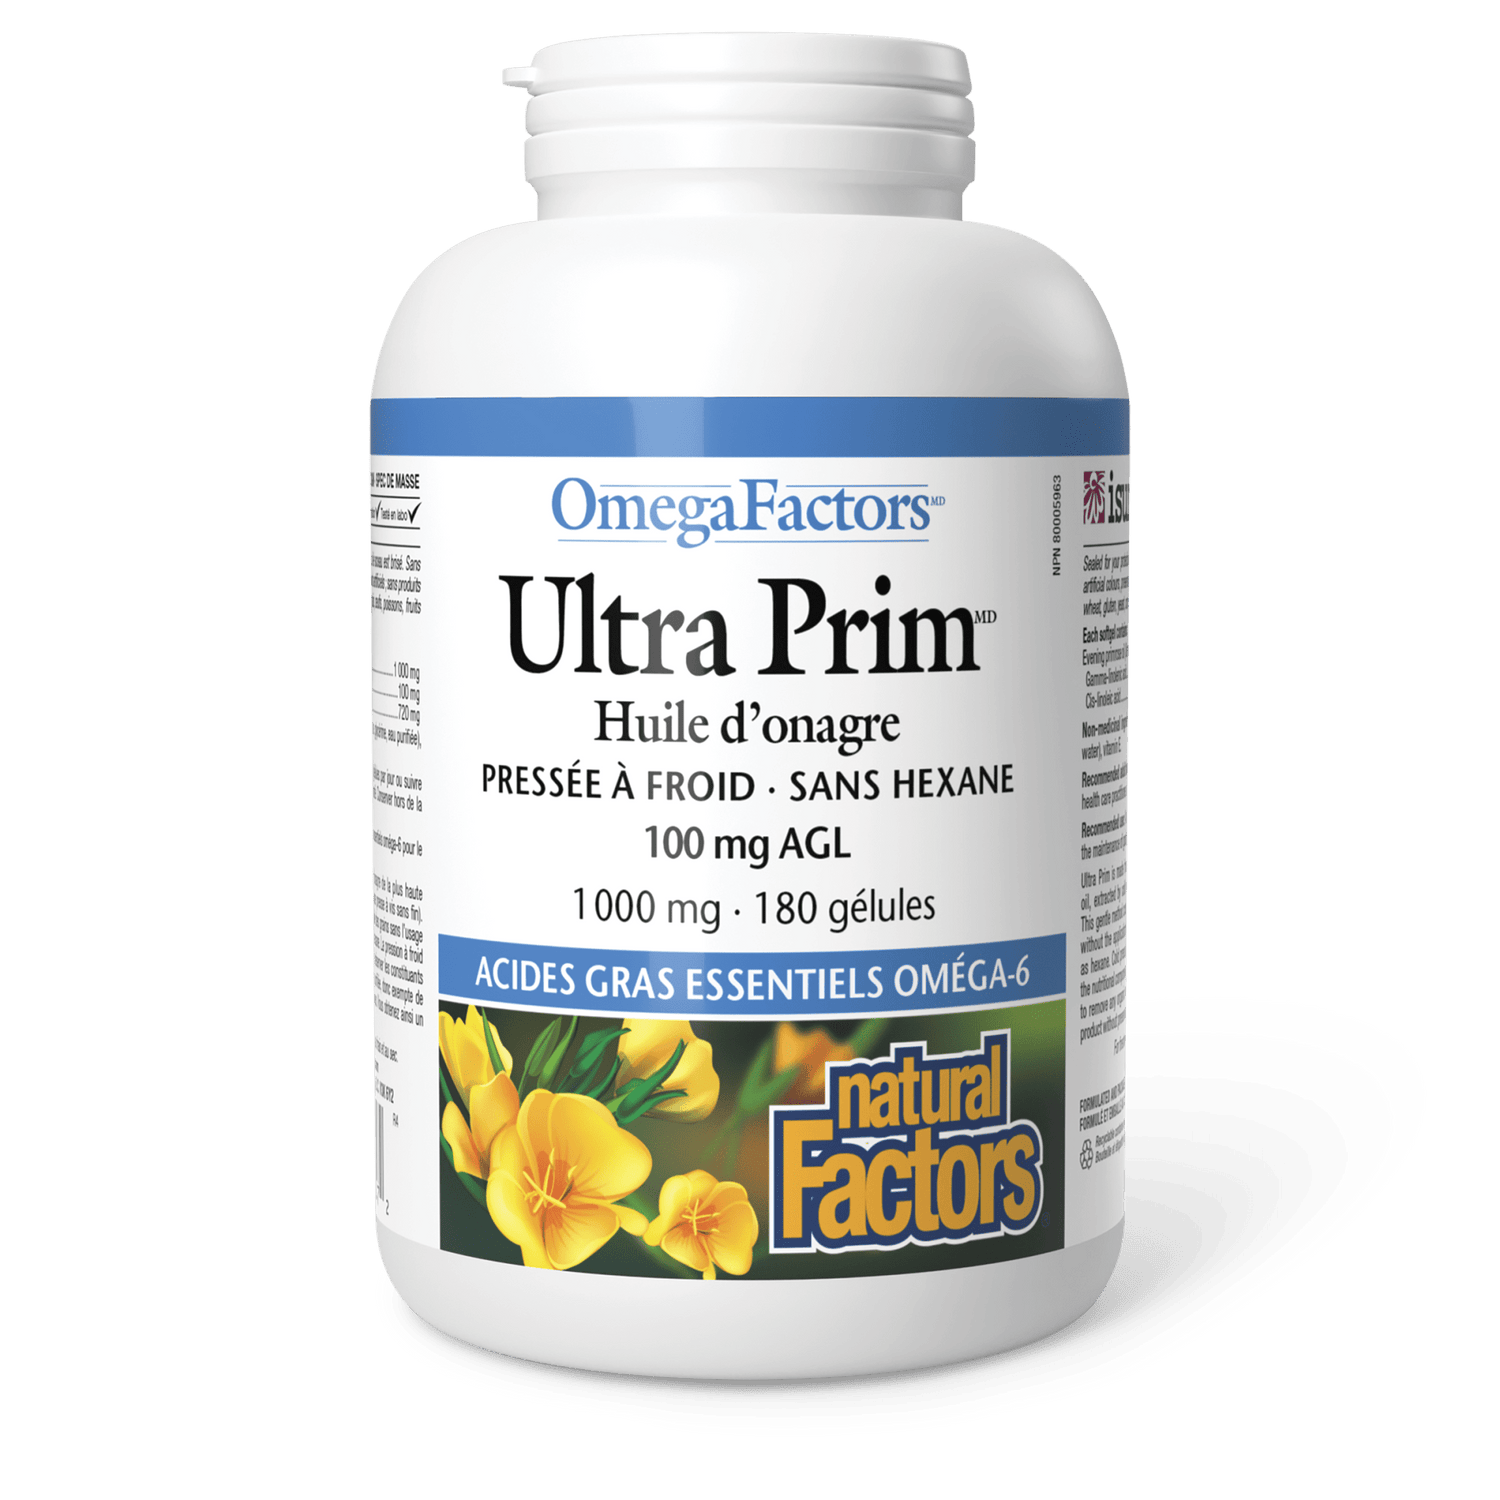 Ultra Prim Huile d’onagre 1 000 mg, OmegaFactors, Natural Factors|v|image|2347